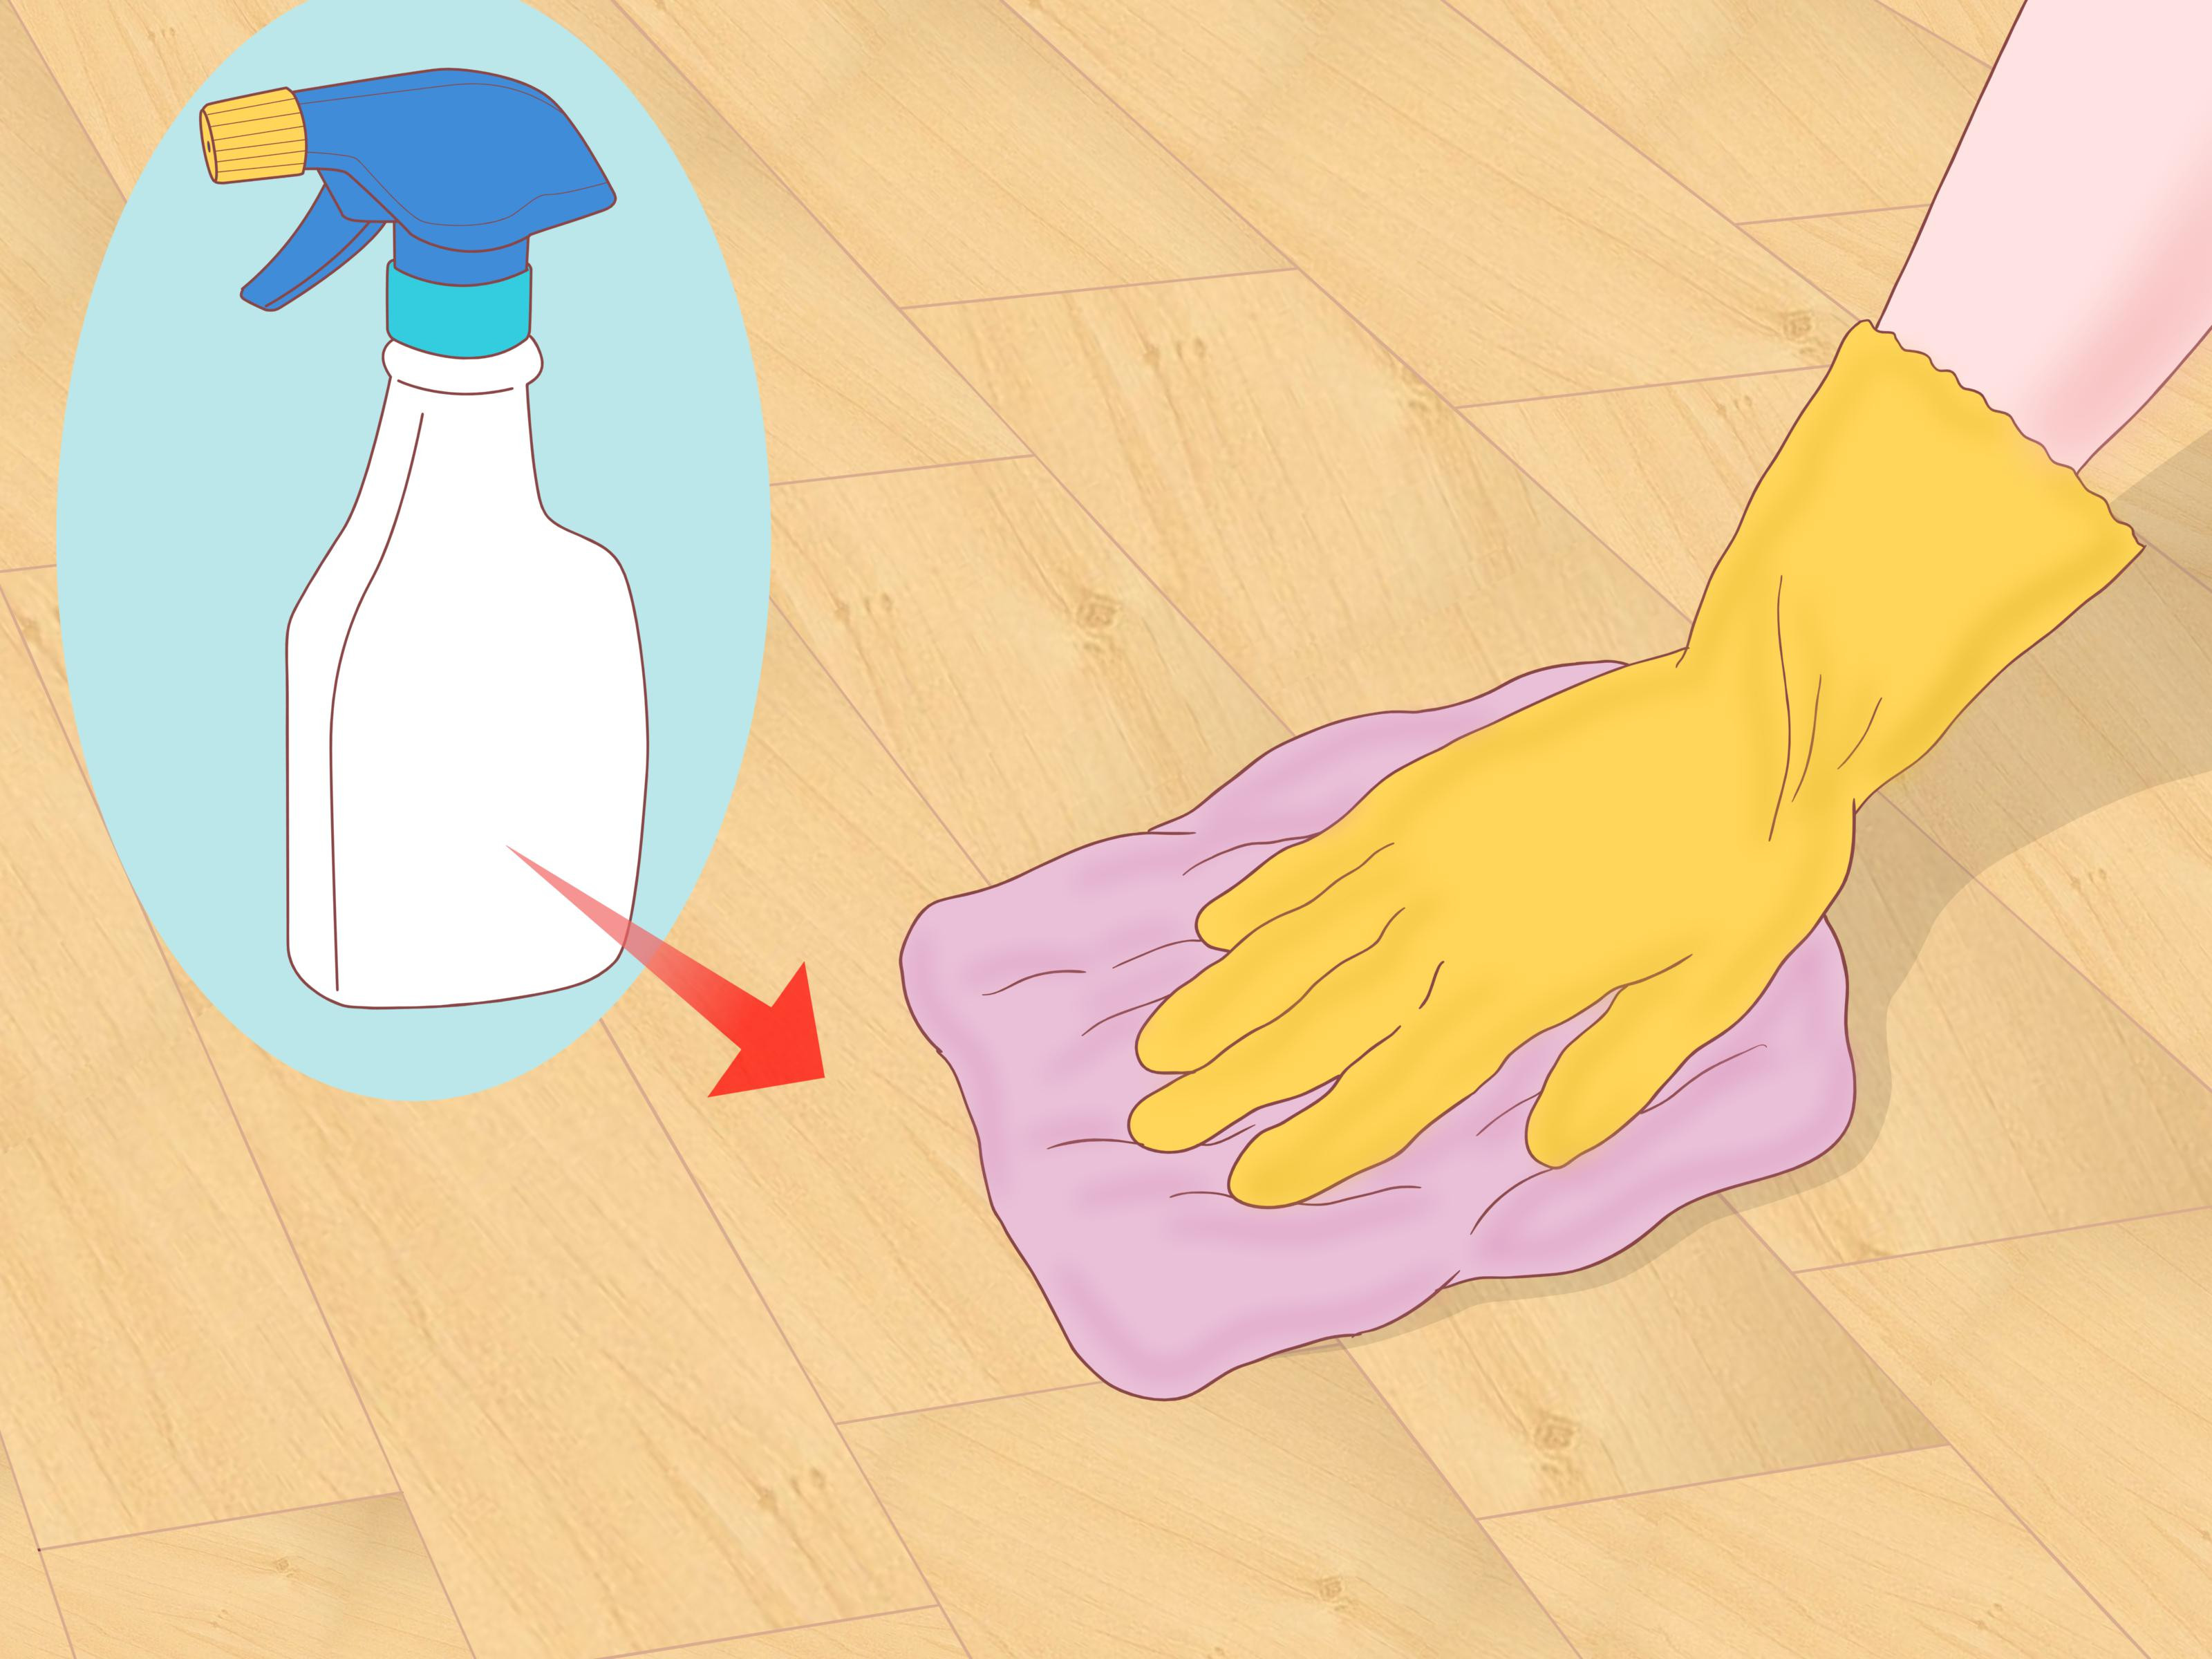 Wax Off Hardwood Floors Of 3 Ways to Clean Parquet Floors Wikihow with Clean Parquet Floors Step 12